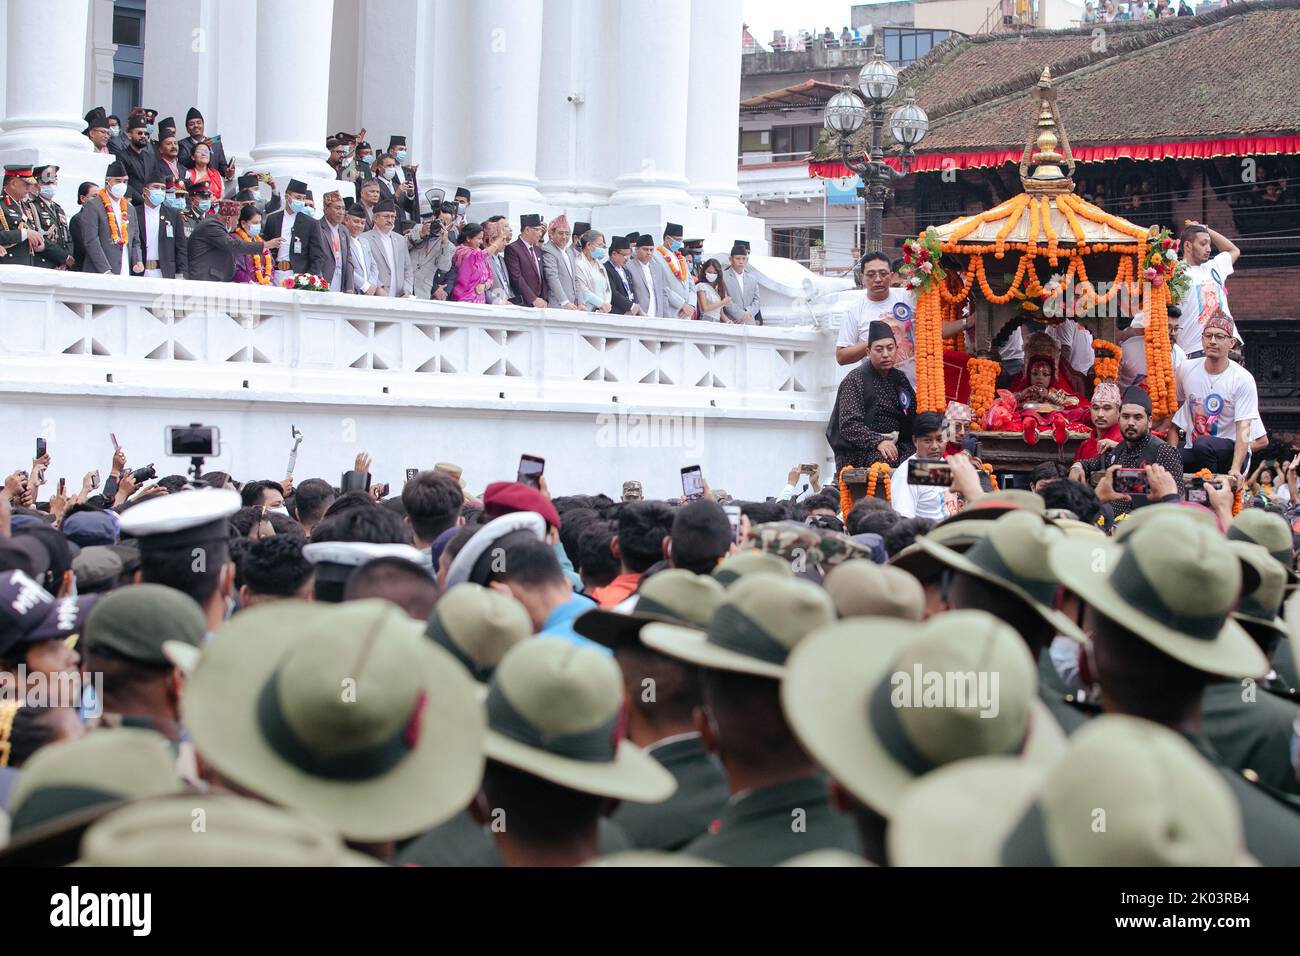 Les dévotés tirent un char portant le Bhairav, un enfant vénéré au Népal comme un dieu vivant, le jour principal du festival 'Indra Jatra'. Le festival annuel, nommé d'après Indra, le dieu de la pluie et du ciel, est célébré par le culte, la joie, le chant, la danse, et la fête dans la vallée de Katmandou pour marquer la fin de la saison de la mousson. Indra, la déesse vivante Kumari et d'autres divinités sont adorés pendant le festival. Banque D'Images